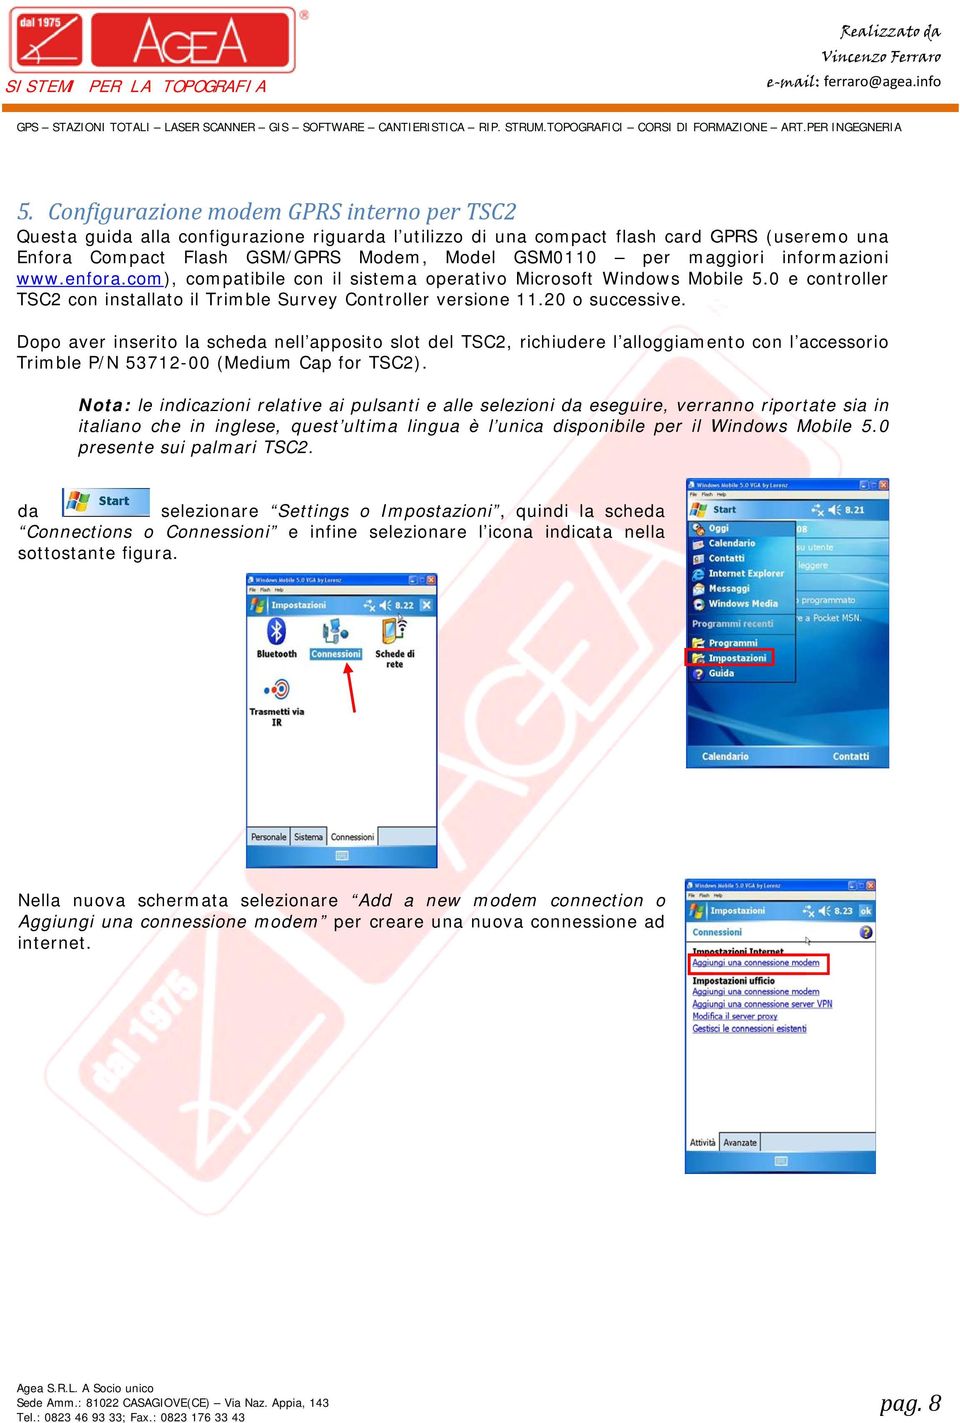 maggiori informazioni www.enfora.com), compatibile con il sistema operativo Microsoft Windows Mobile 5.0 e controller TSC2 con installato il Trimble Survey Controller versione 11.20 o successive.